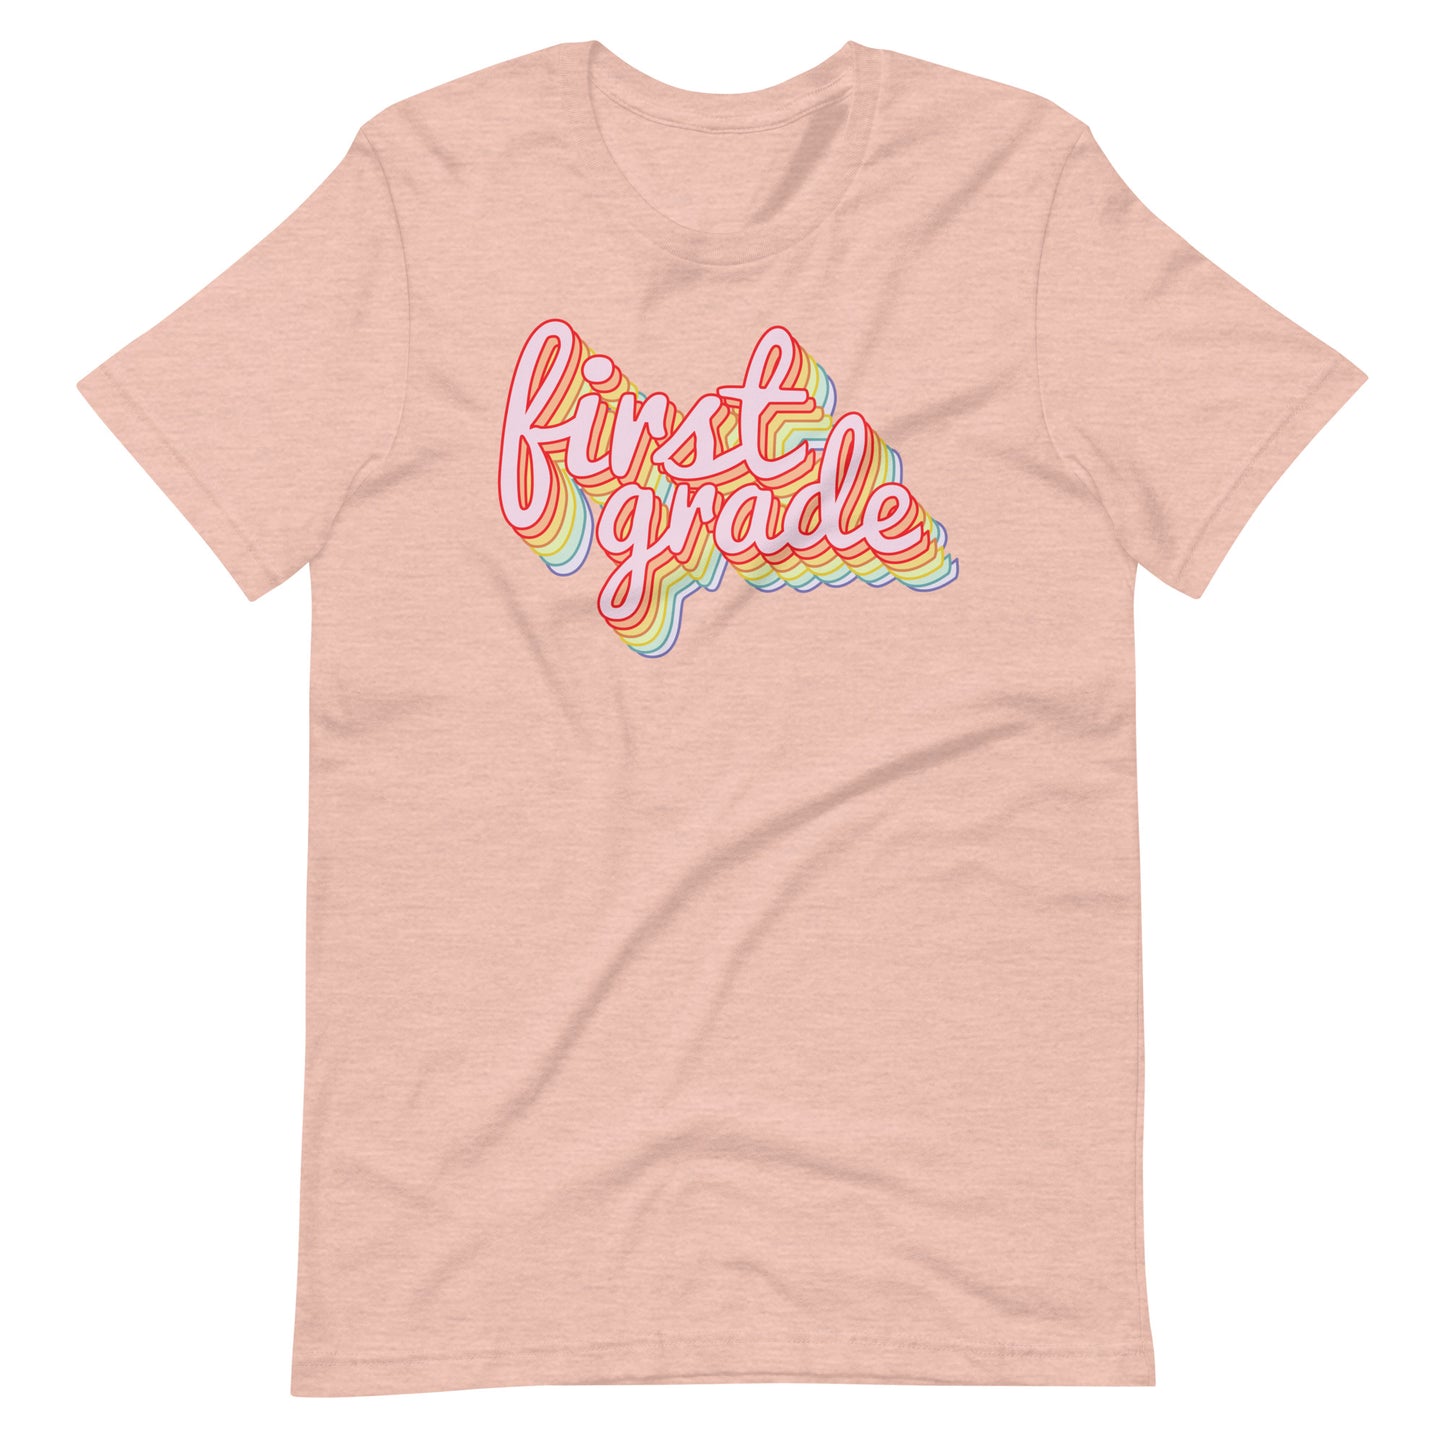 First Grade Retro Rainbow Short Sleeve Teacher T-shirt